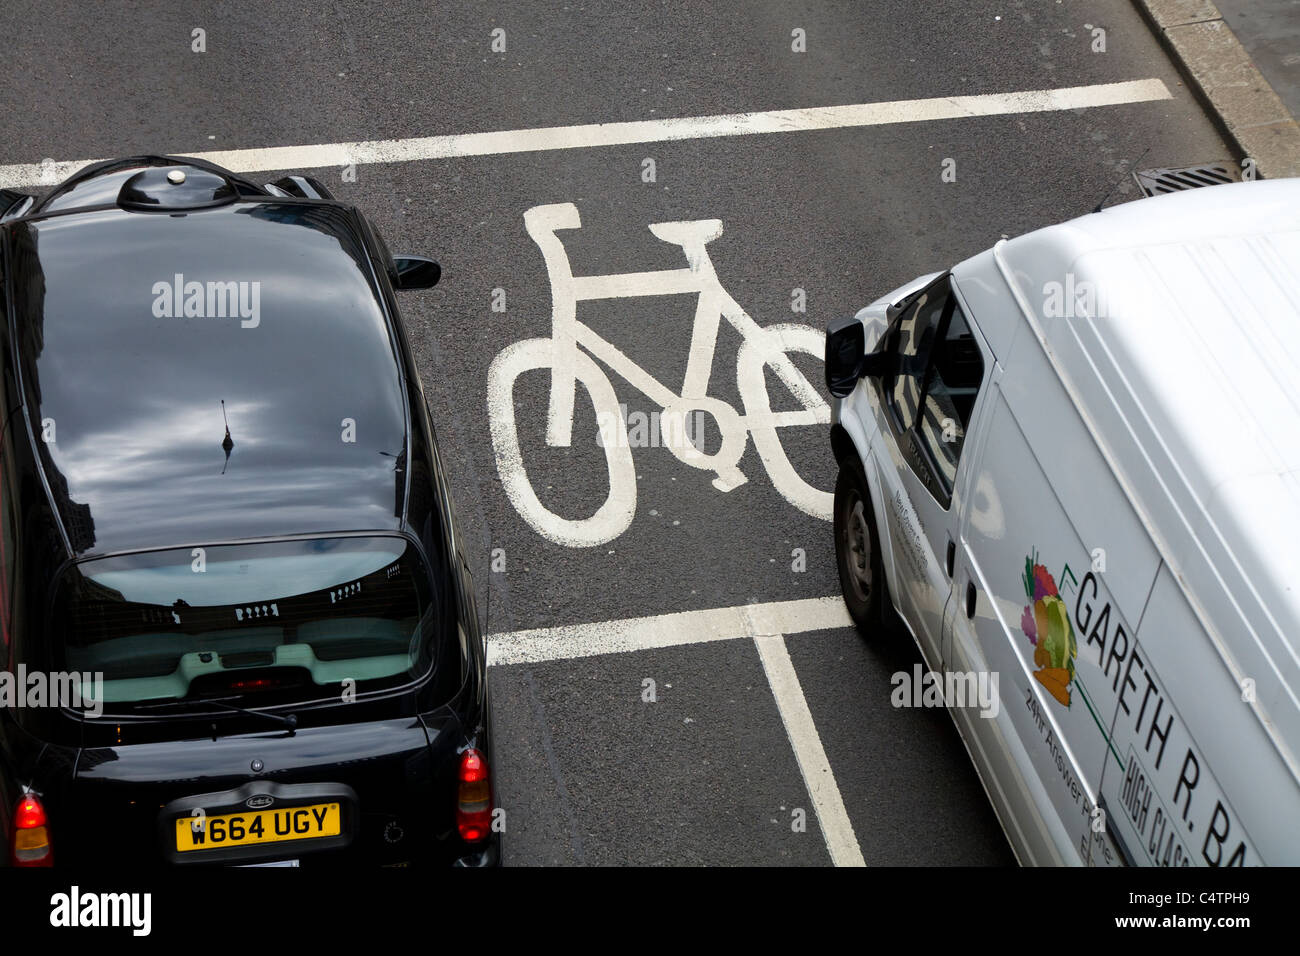 Arresto avanzata area linea (ASL) designato per ciclisti / dipinte di giunzione scatola per bici / moto / / ciclo corsie / lane. Londra. Un veicolo auto Black Cab taxi è nella casella Foto Stock